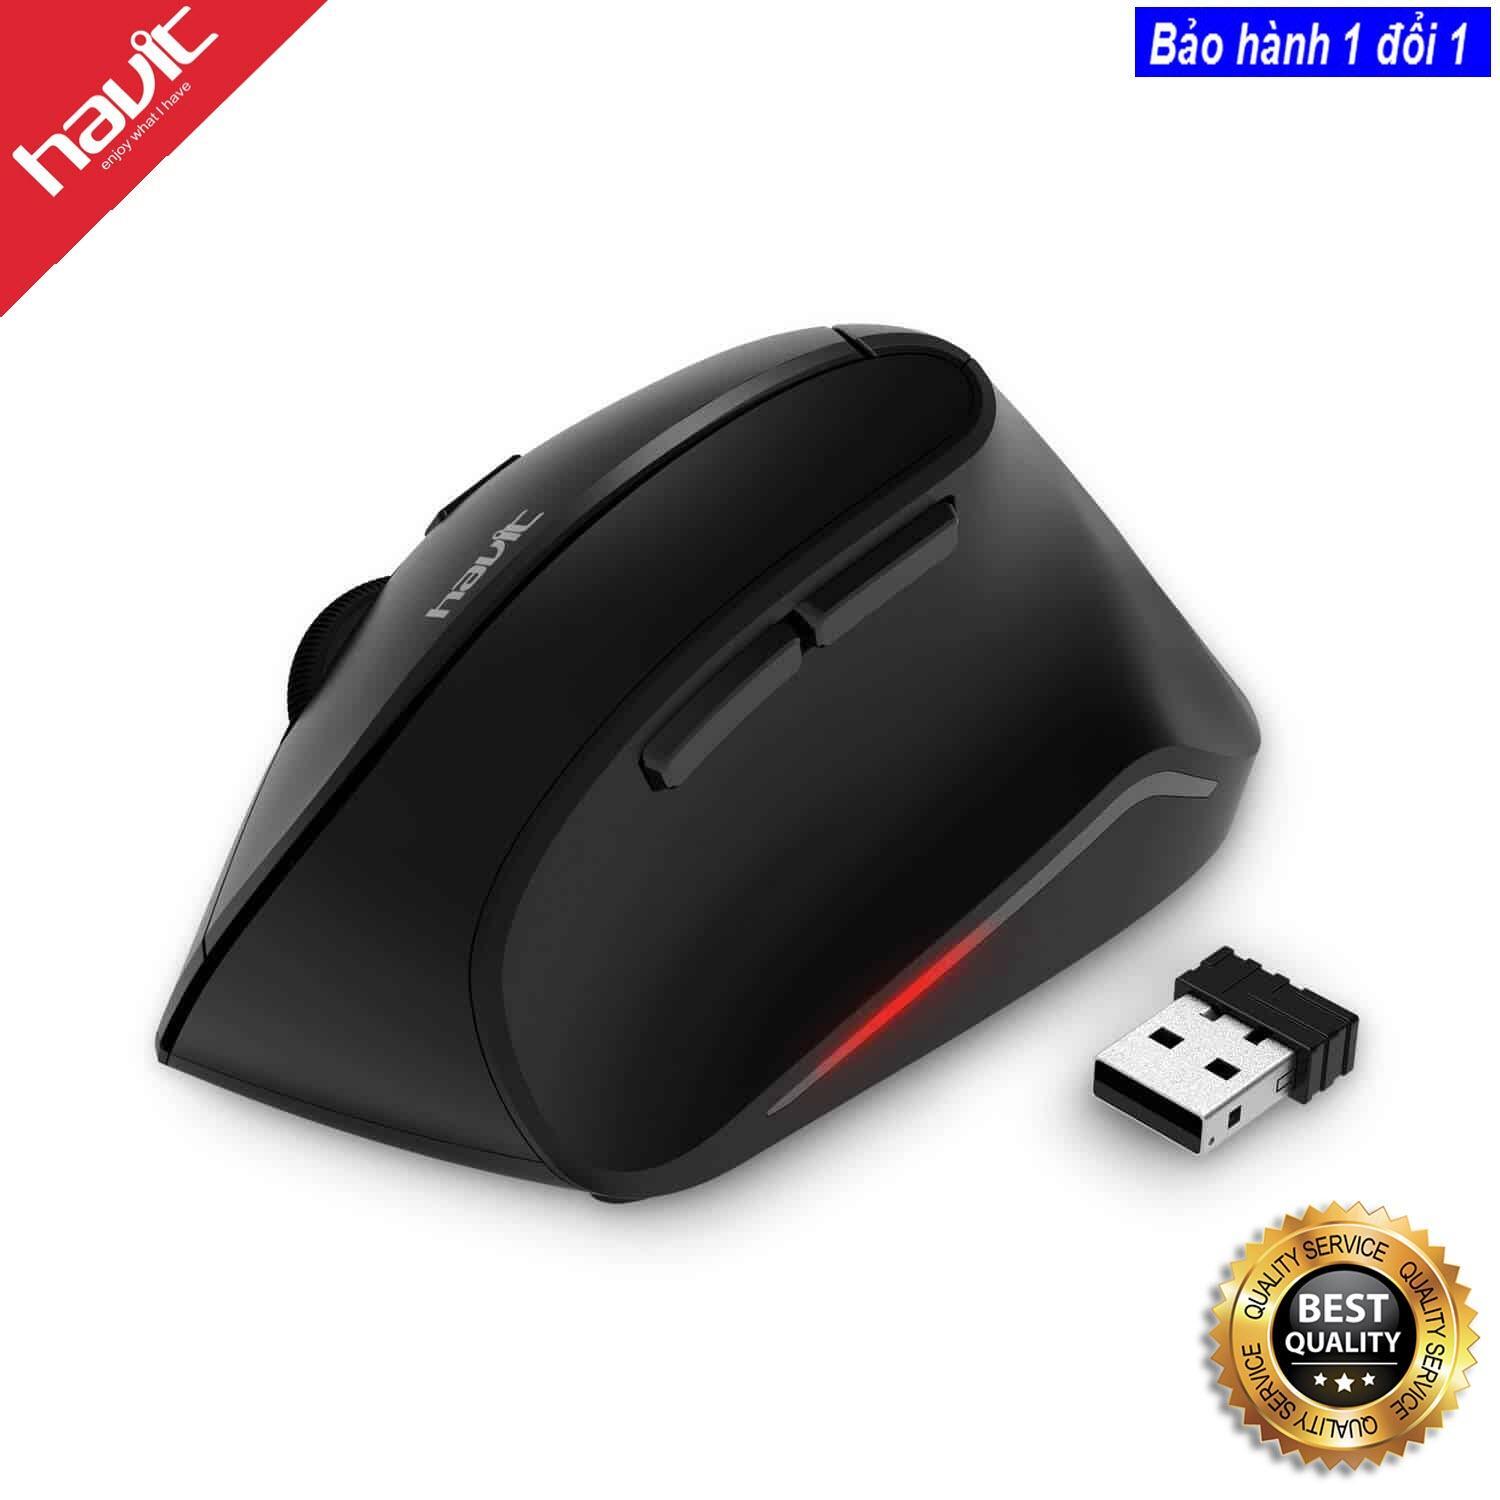 Chuột máy tính - Mouse Havit MS55GT